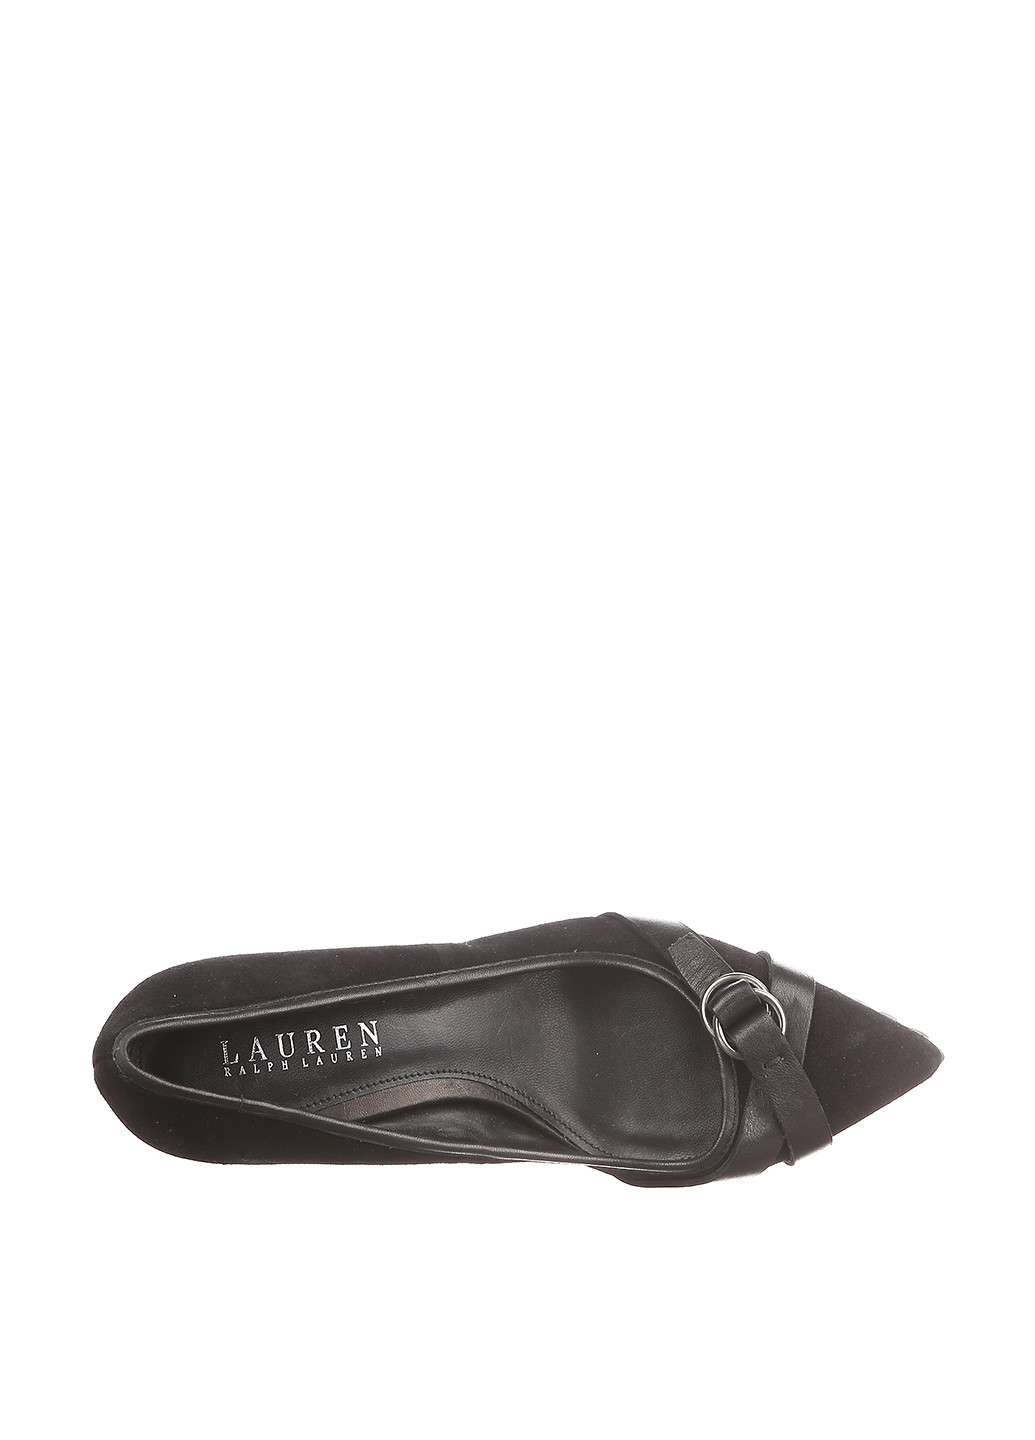 Туфли Ralph Lauren на среднем каблуке с пряжкой